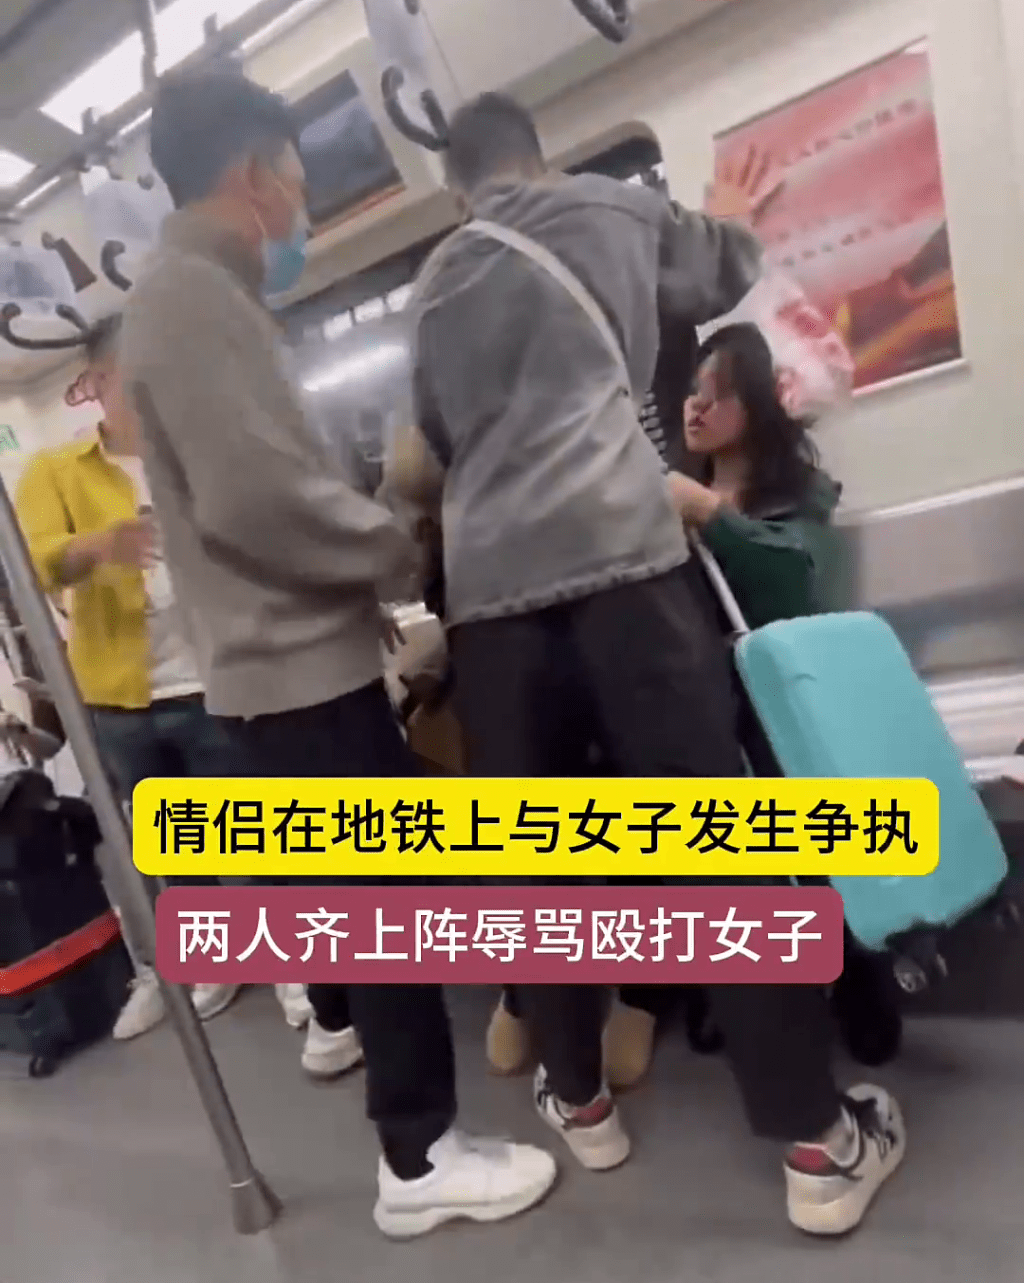 有男乘客用身体企图挡在双方的中间。